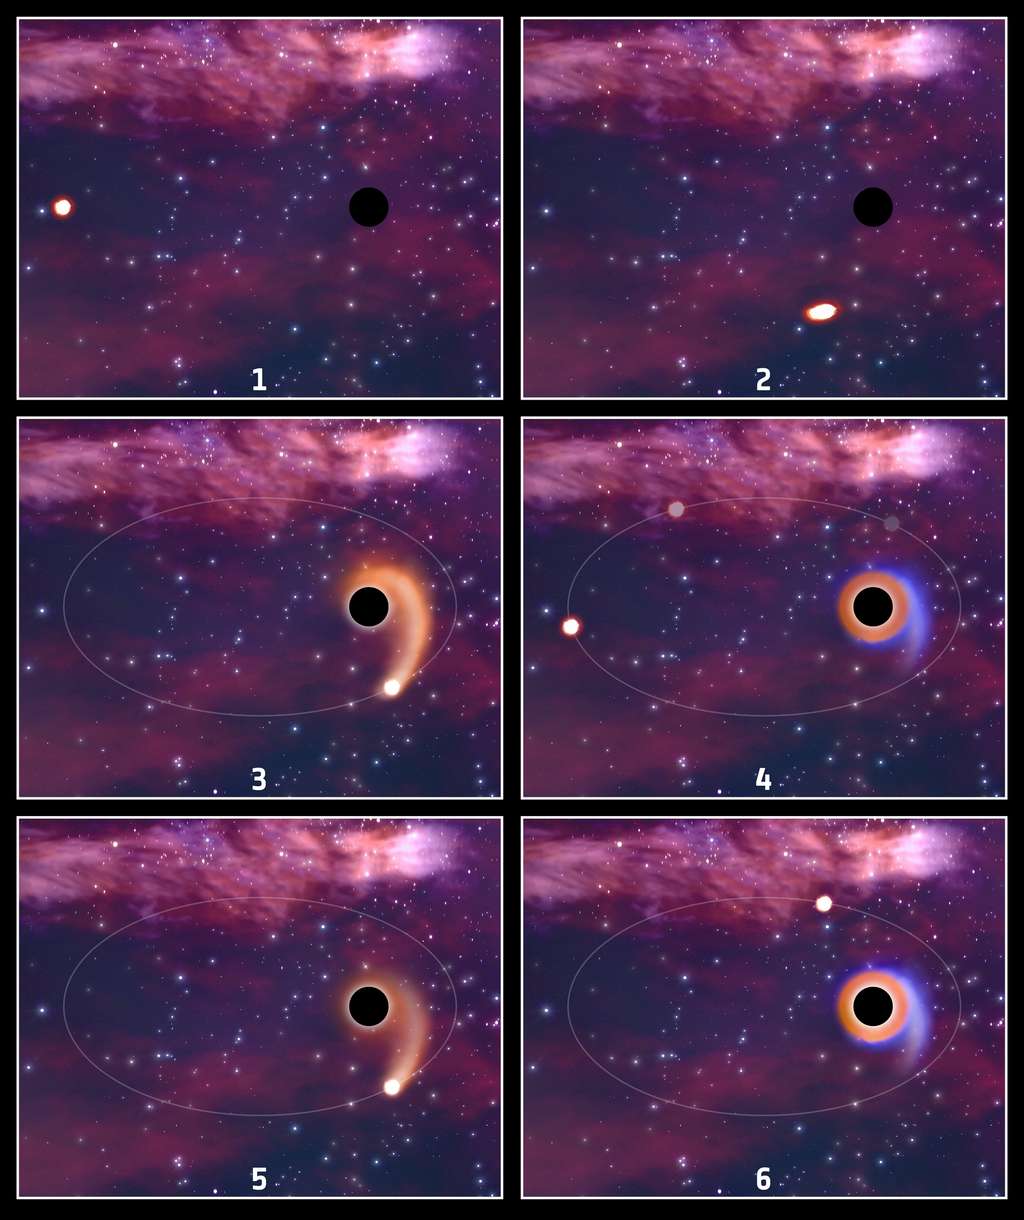 Vue d'artiste montre une étoile en orbite autour d'un trou noir (panneau 1). En s'approchant du trou noir, l'étoile commence à être déchiquetée (panneau 2). Un flux de matériau (orange) arraché des couches externes de l'étoile tombe vers le trou noir (panneau 3). Ce flux alimente le trou noir et forme un disque autour de lui (panneau 4). La matière stellaire restante du flux est colorée en bleu. Cet événement de rupture par effet de marée crée des explosions de rayons X, d'UV et de lumière optique. En de rares occasions, le noyau de l'étoile survit et commence une autre orbite elliptique du trou noir. Le disque entourant le trou noir s'estompe (panneau 5). L'étoile s'approche à nouveau du trou noir et une autre explosion de lumière est libérée (panneau 6). La couleur plus pâle du disque d'accrétion, par rapport au panneau 4, indique que les sursauts de lumière sont plus faibles après la première rencontre avec le trou noir, car moins de matière est tirée dans le disque depuis l'étoile. © ESA, CC by-sa 3.0 IGO